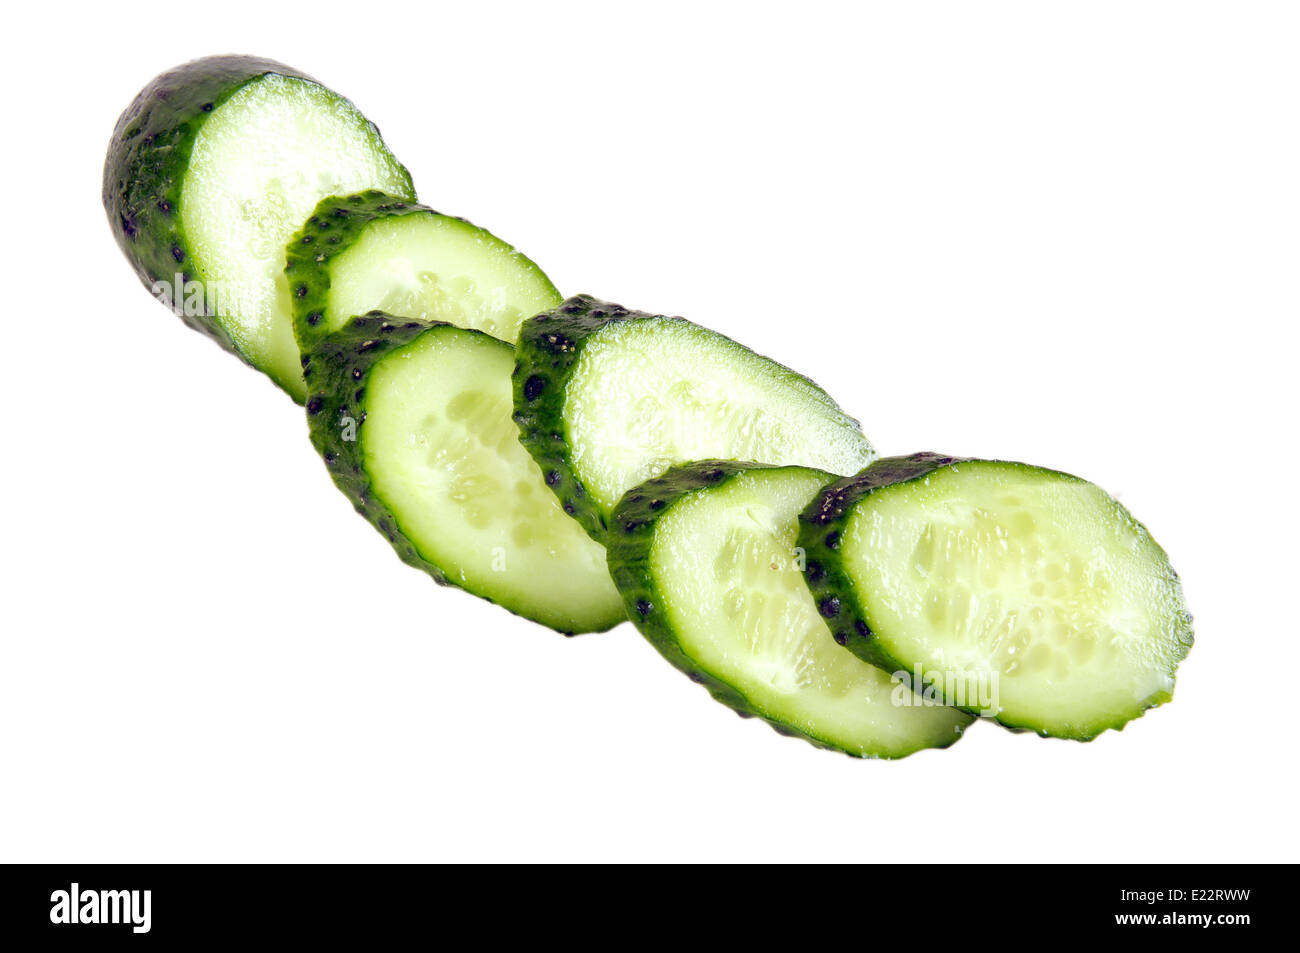 Gurken - Gemüse sehr lecker und nützlich. Es wird in den Küchen vieler Menschen verwendet. Stockfoto